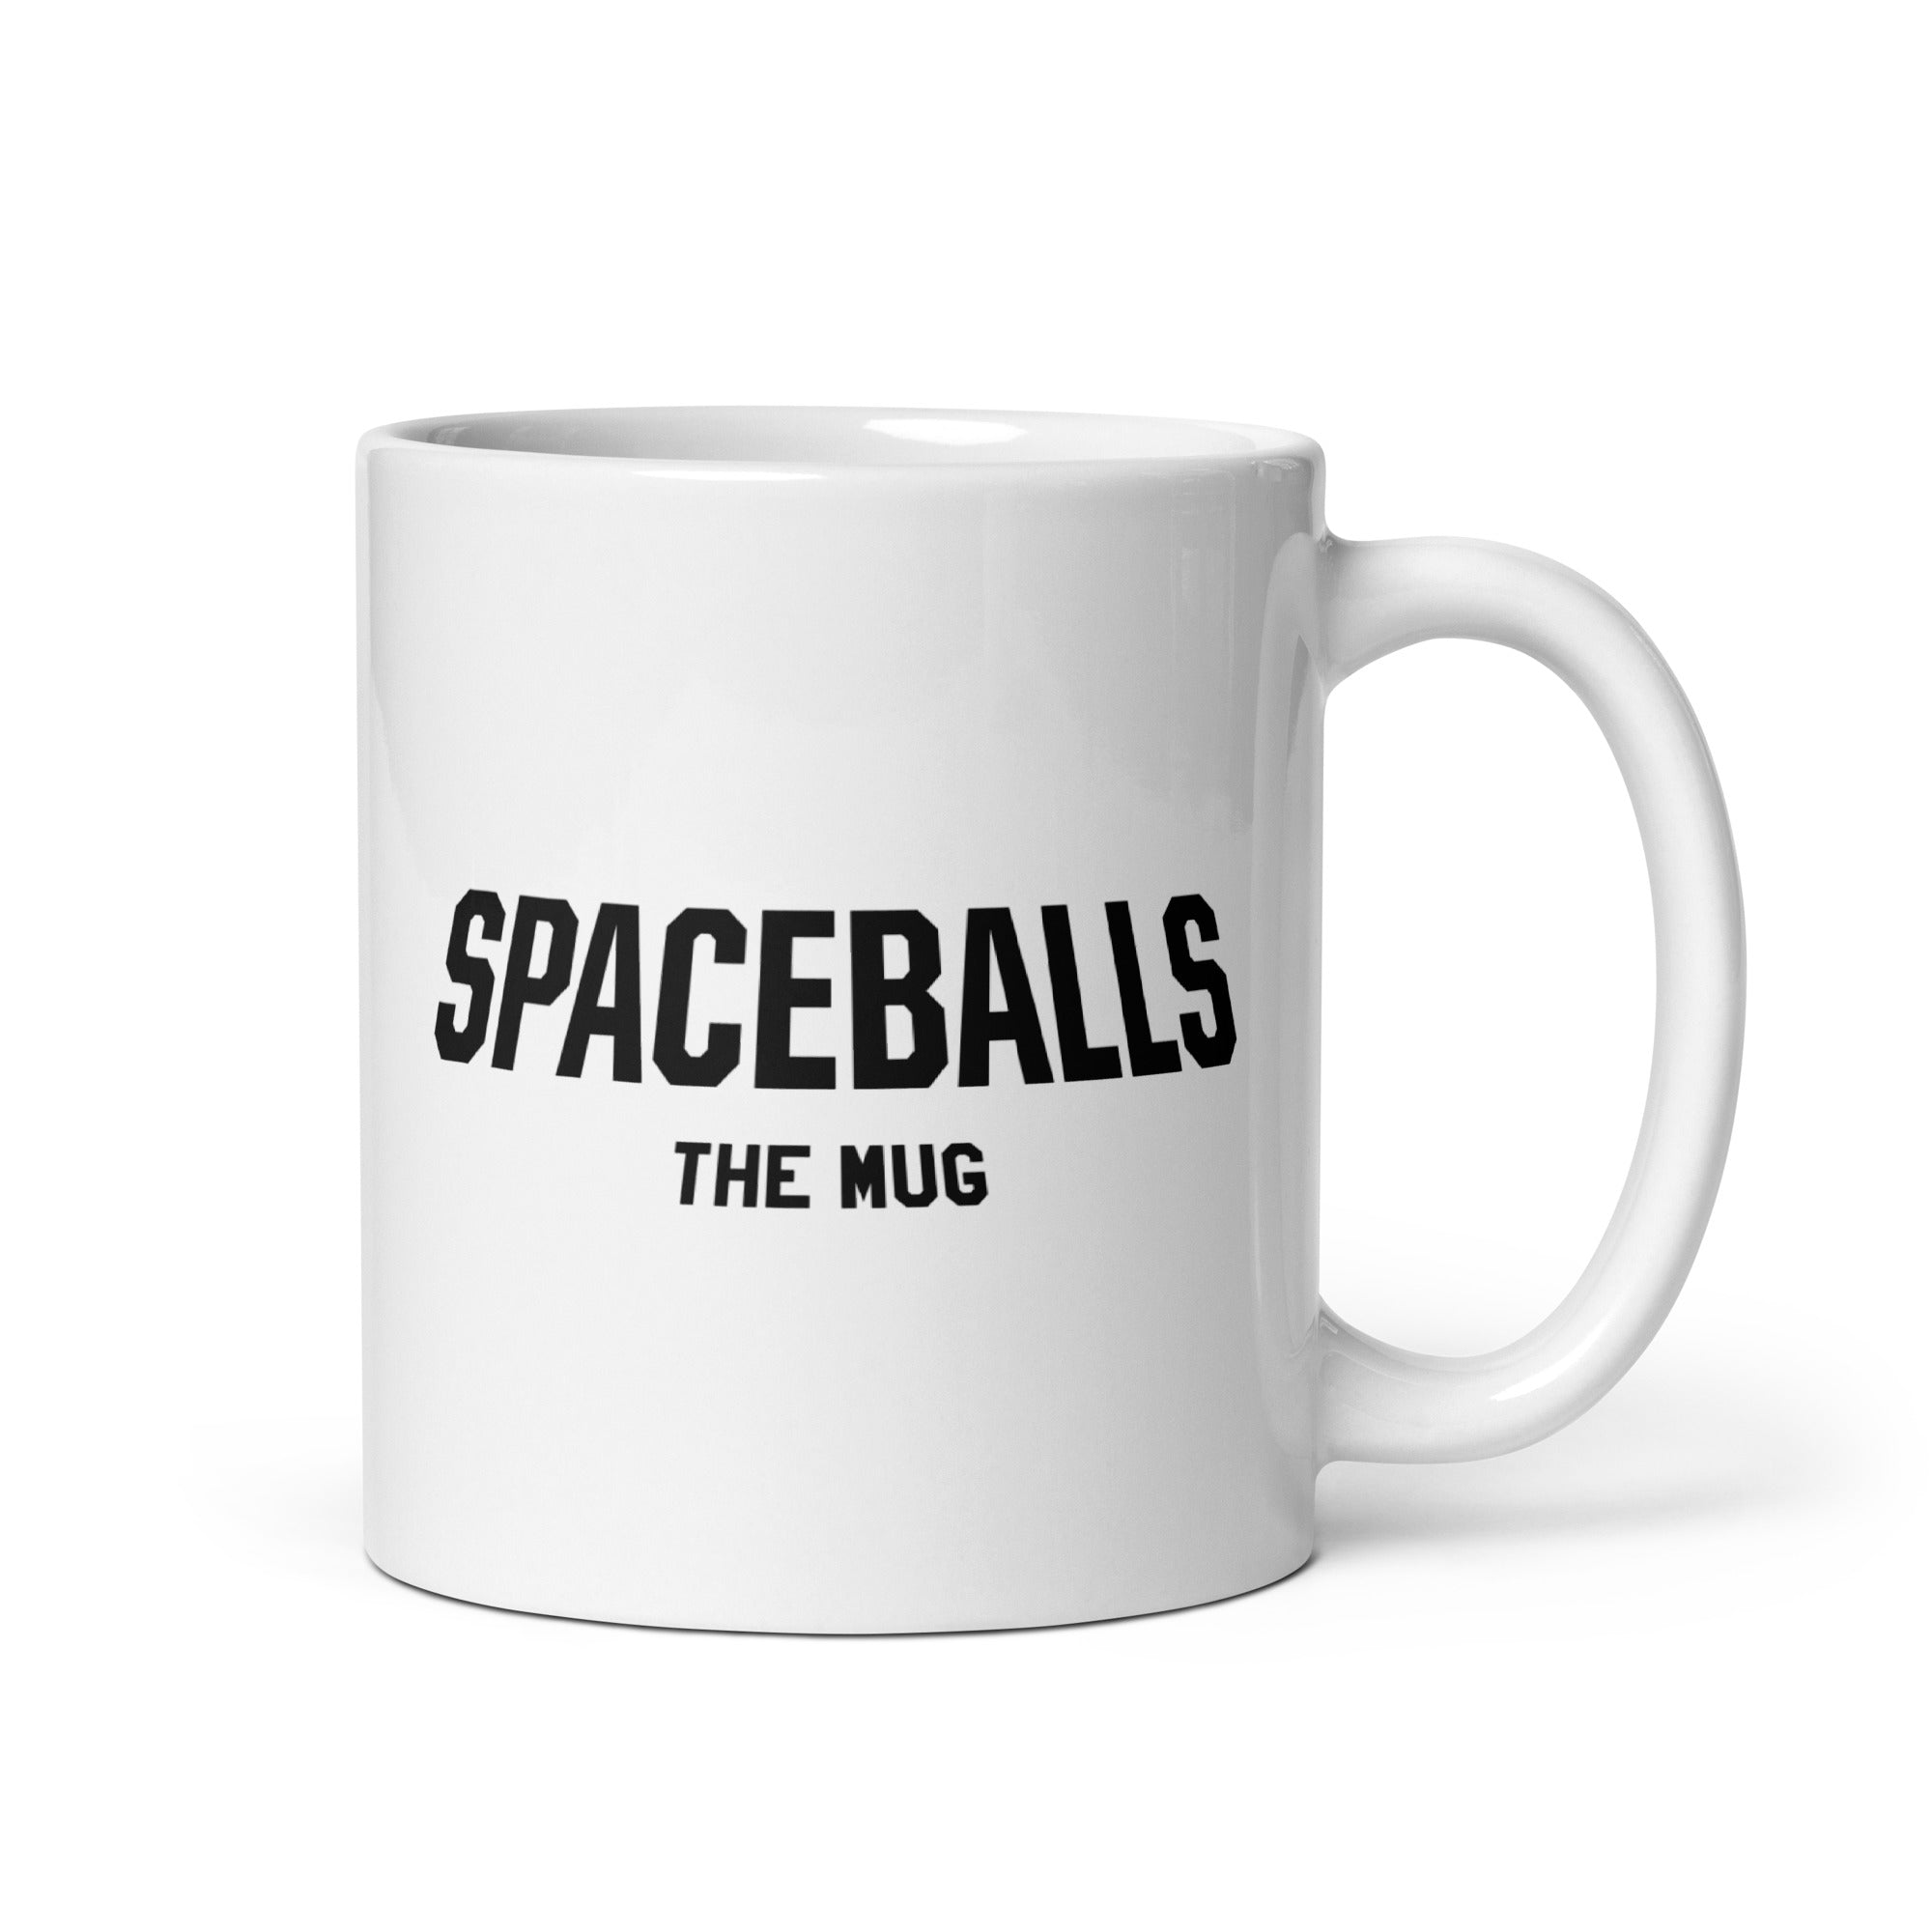 Spaceballs The Mug - 11oz Coffee Mug